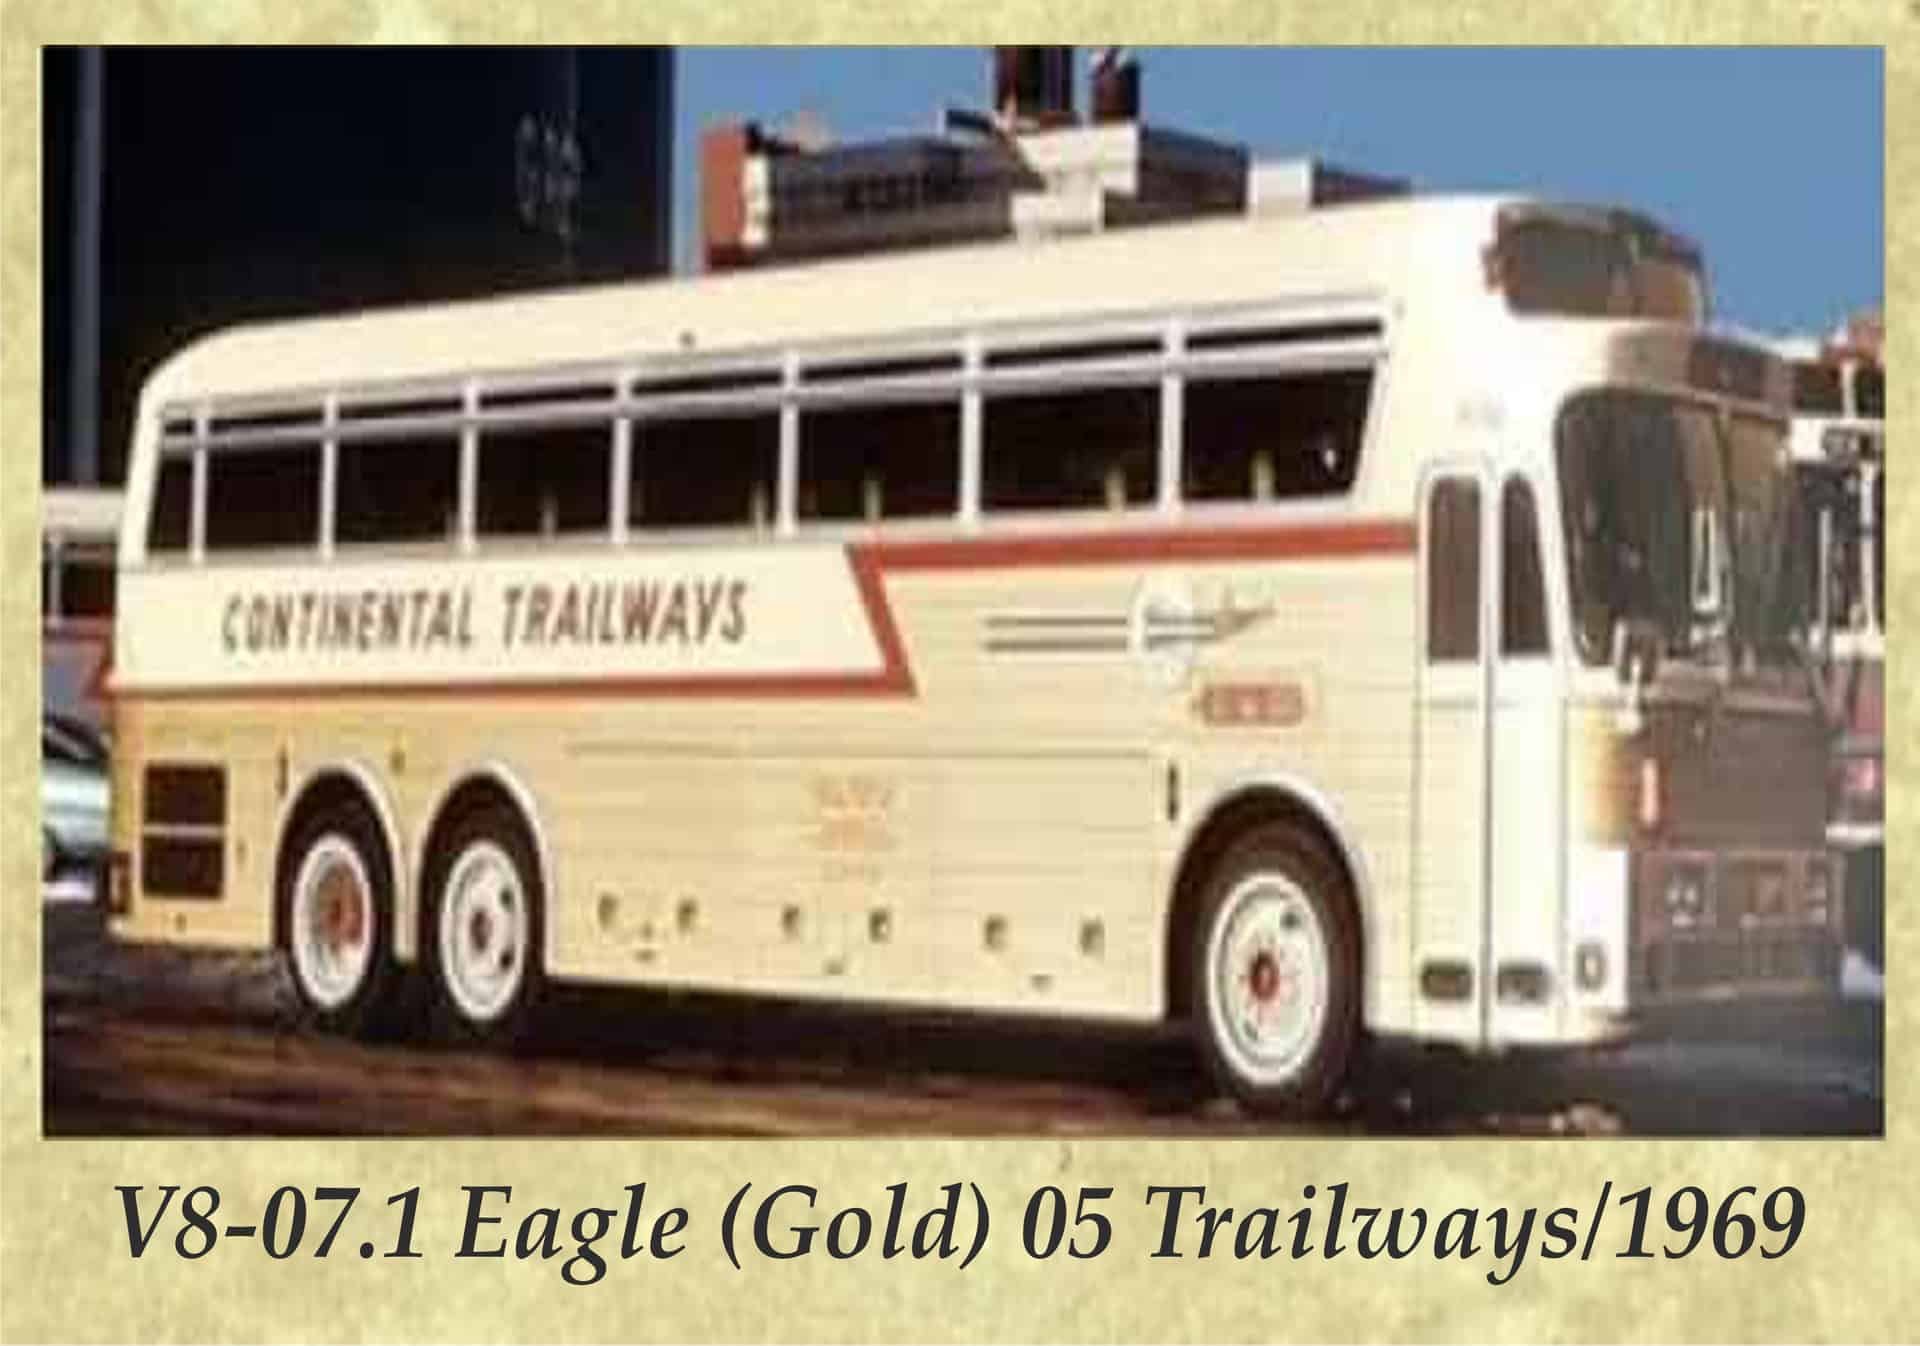 V8-07.1 Eagle (Gold) 05 Trailways 1969